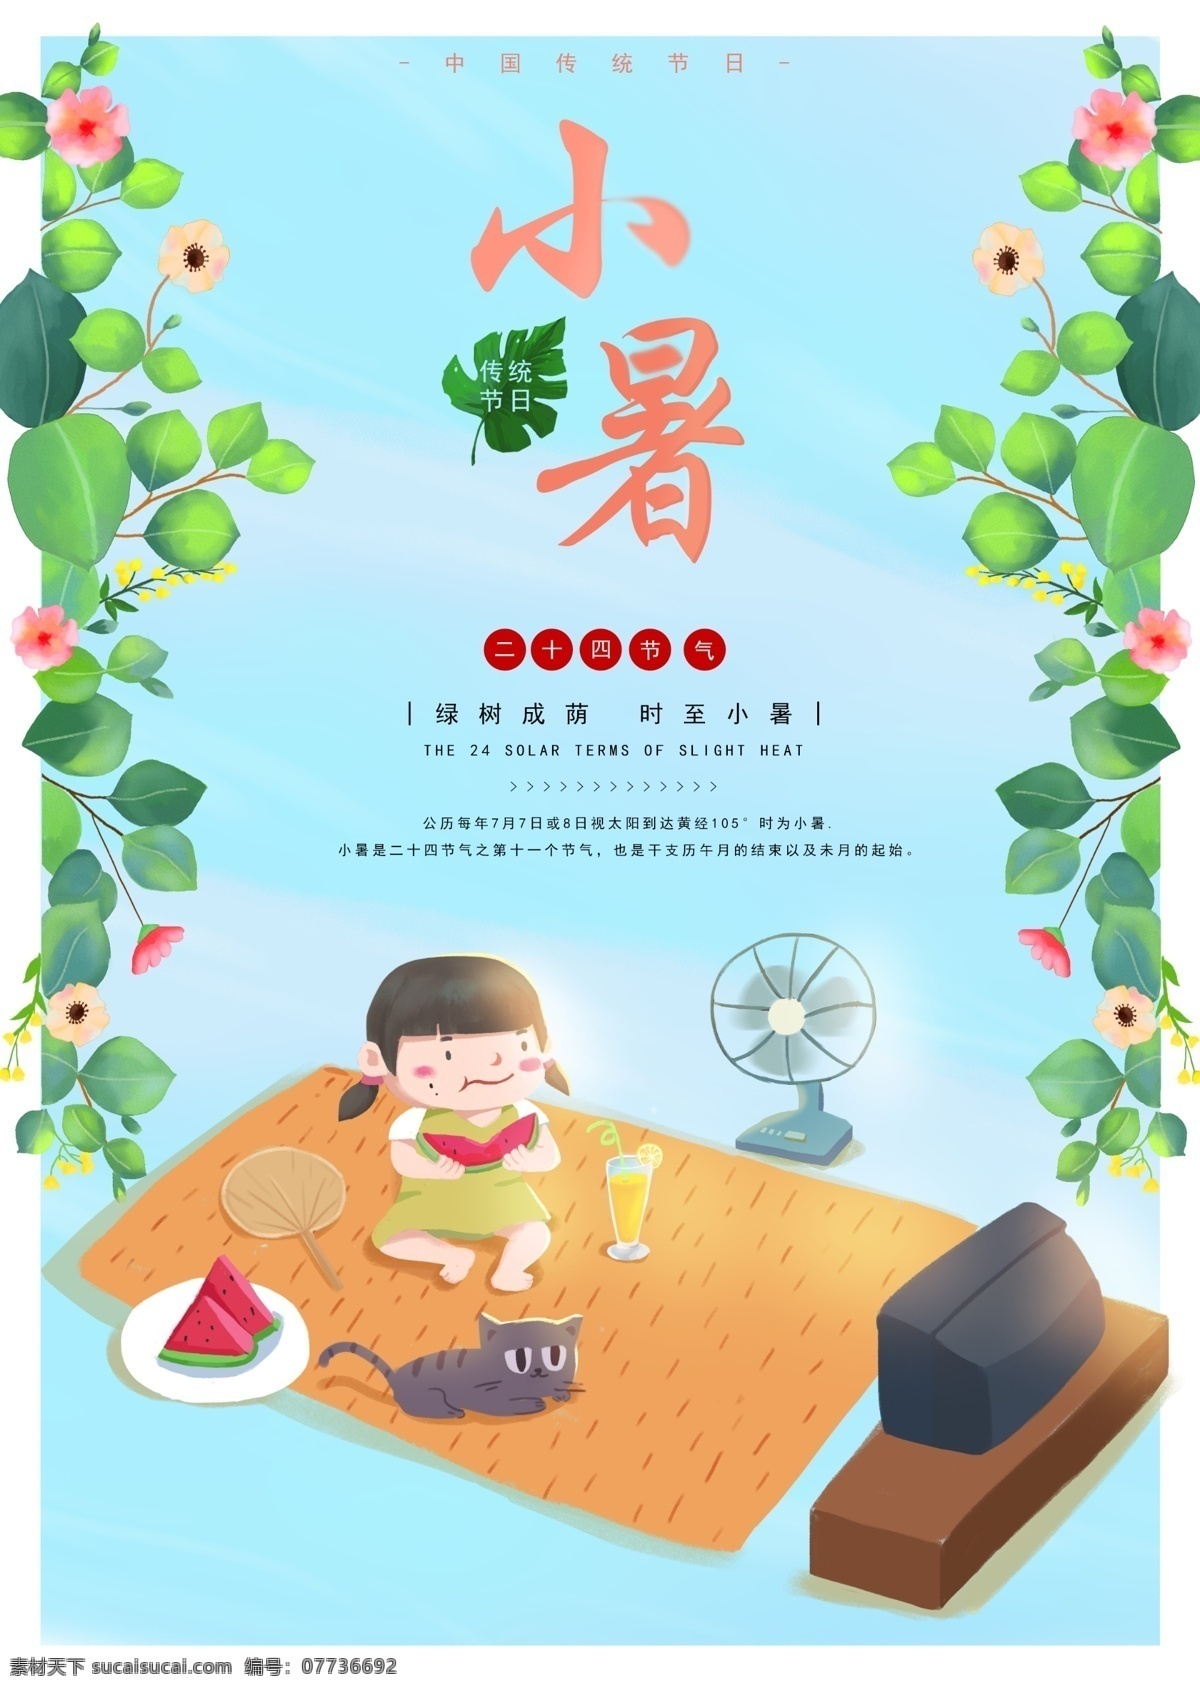 节气 小暑 海报 24节气 二十四节气 清新 传统节日 中国 夏天 插画 蓝色天空 绿叶